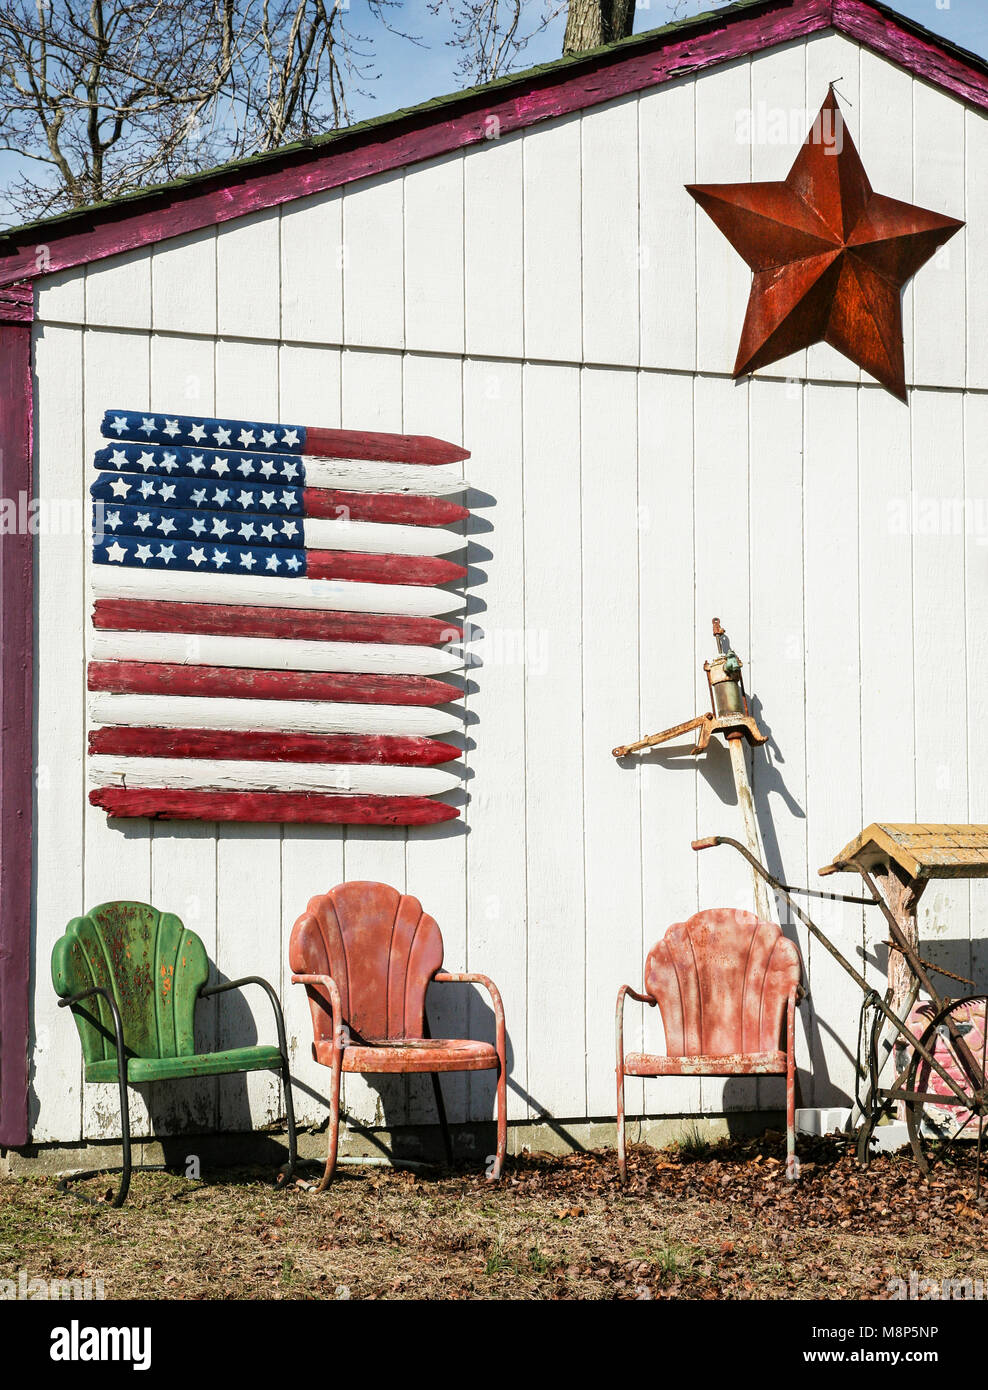 Holzfahne und Vintage Metallstühle, Vintage Gartenmöbel, in der Nähe von Hammonton, New Jersey, USA, Bauernhof Gebäude vertikale Landwirtschaft Werkzeug Schuppen Stockfoto